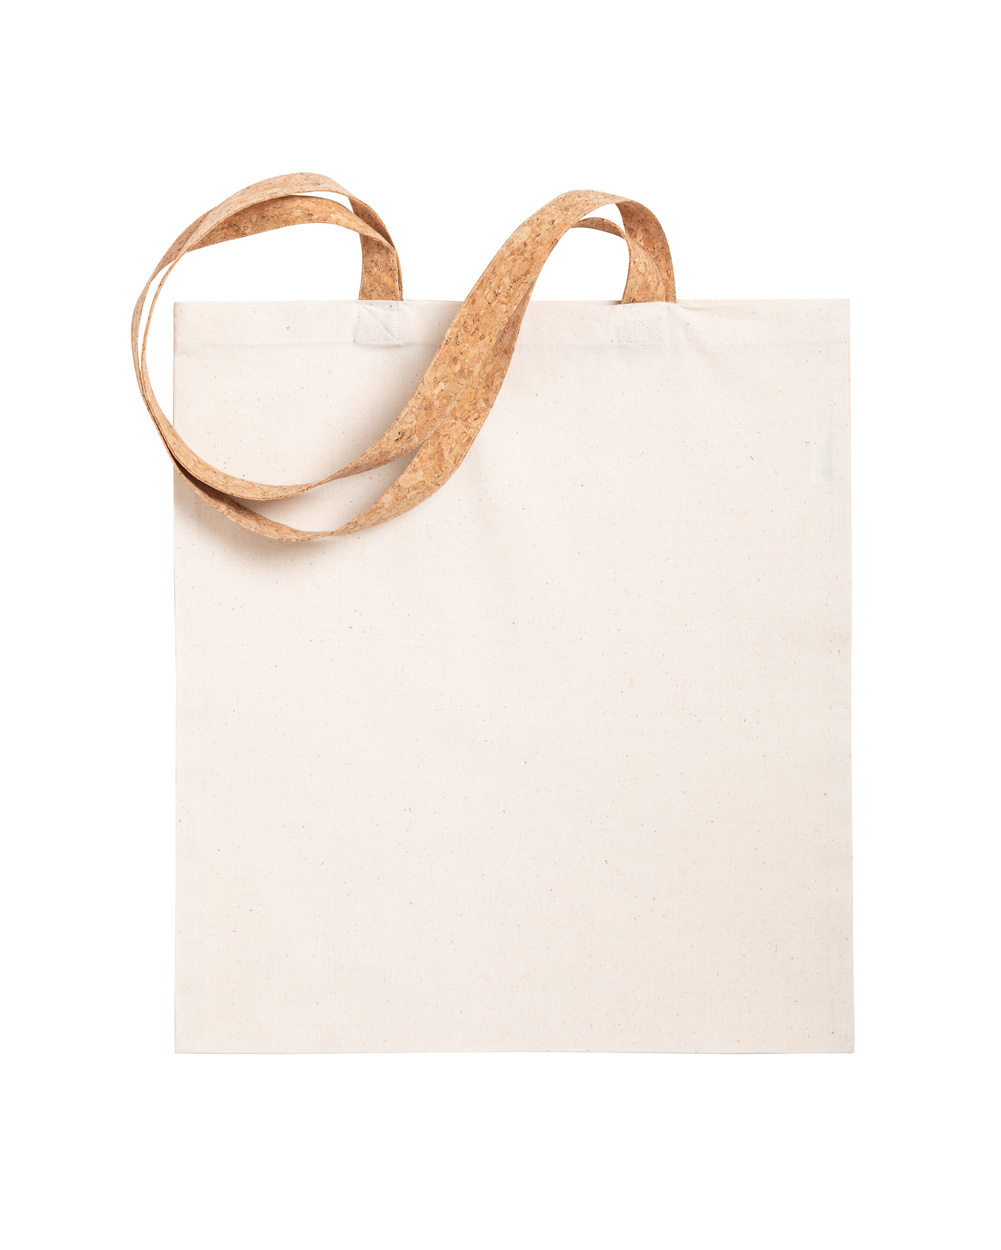 Bavlněná nákupní taška YULIA s korkovými držadly - přírodní